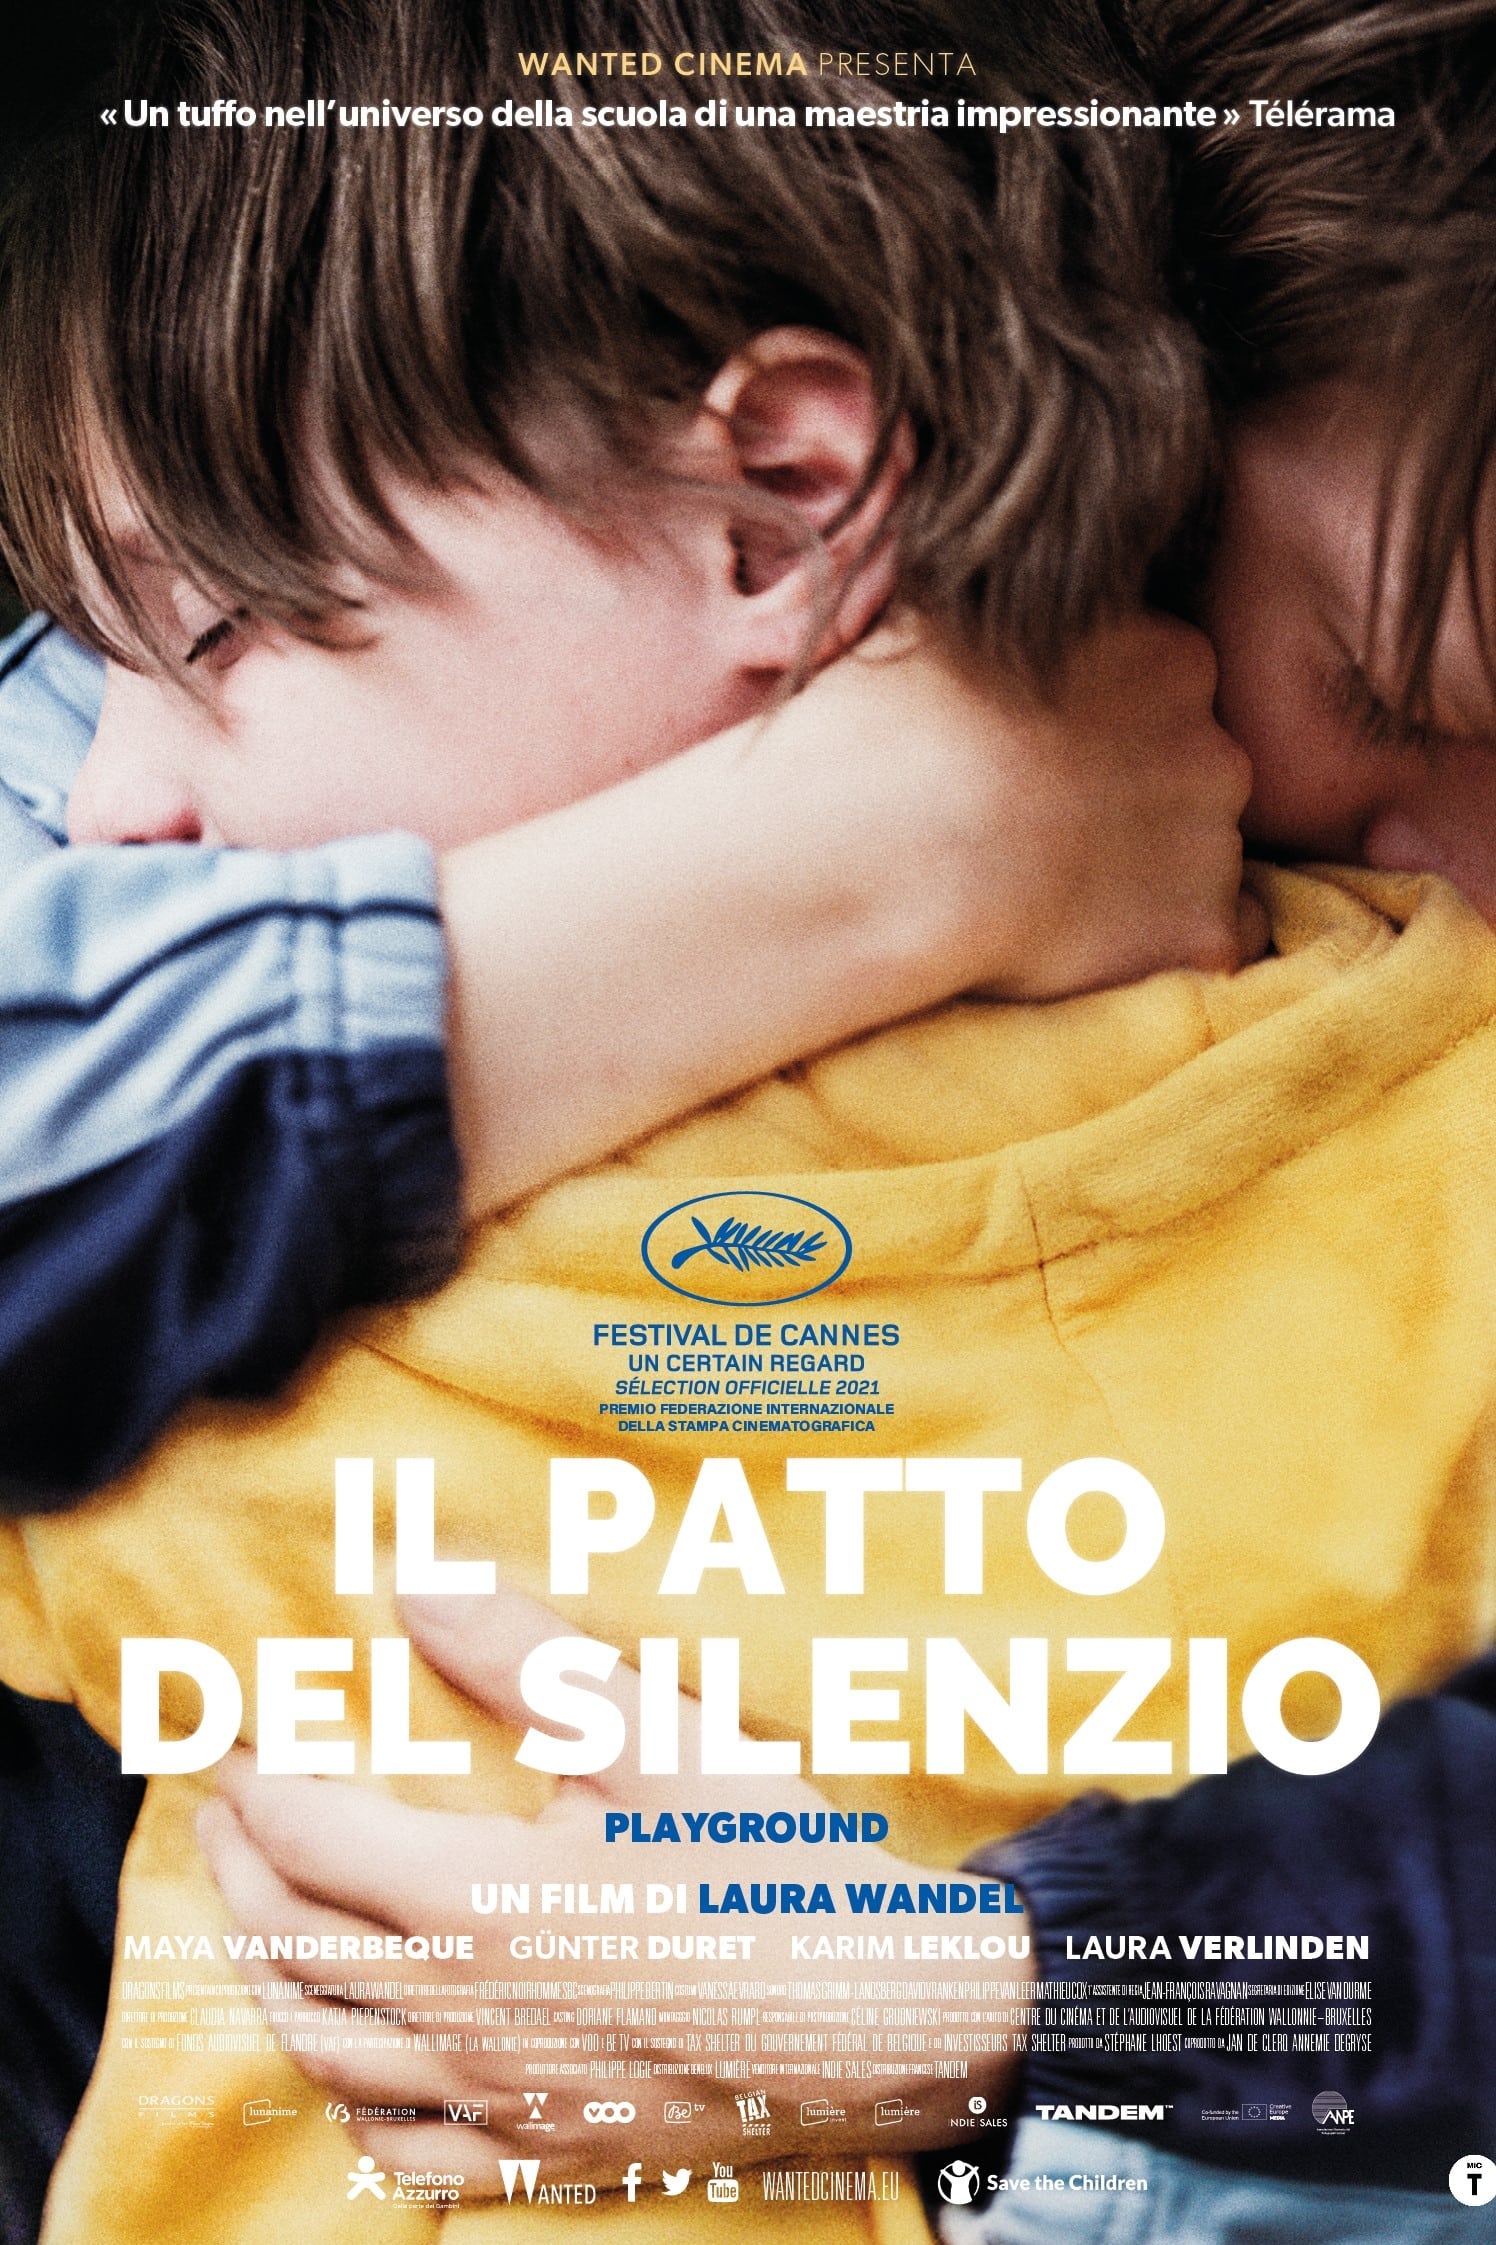 Poster for the movie "Il patto del silenzio"